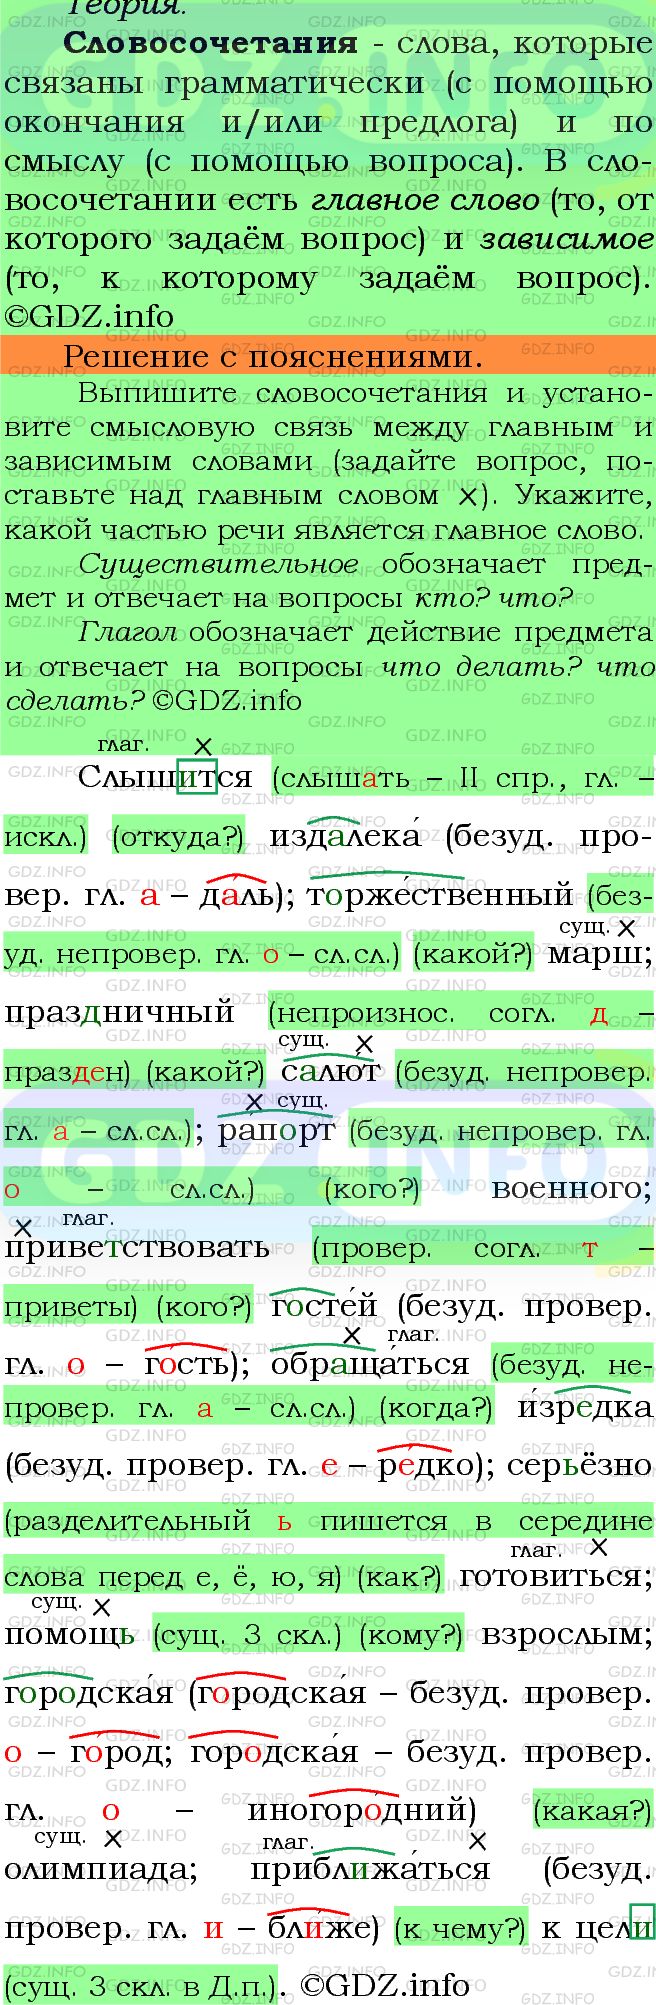 Фото решения 6: Номер №133 из ГДЗ по Русскому языку 5 класс: Ладыженская Т.А. 2012г.